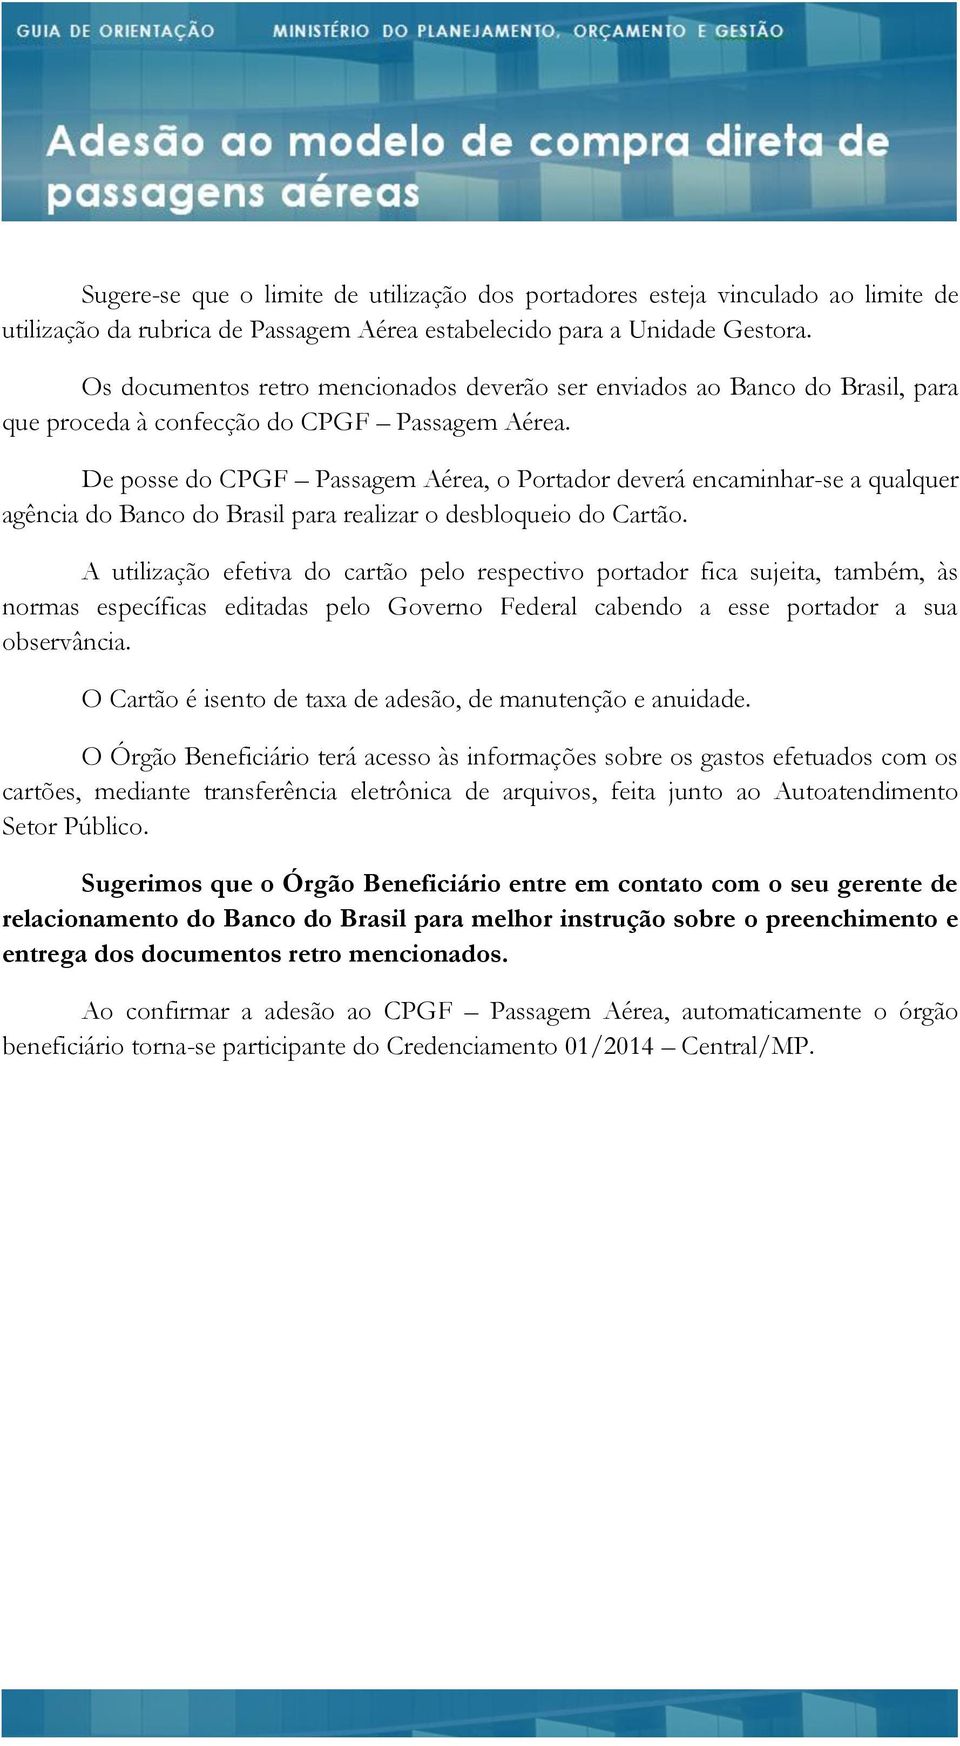 De posse do CPGF Passagem Aérea, o Portador deverá encaminhar-se a qualquer agência do Banco do Brasil para realizar o desbloqueio do Cartão.